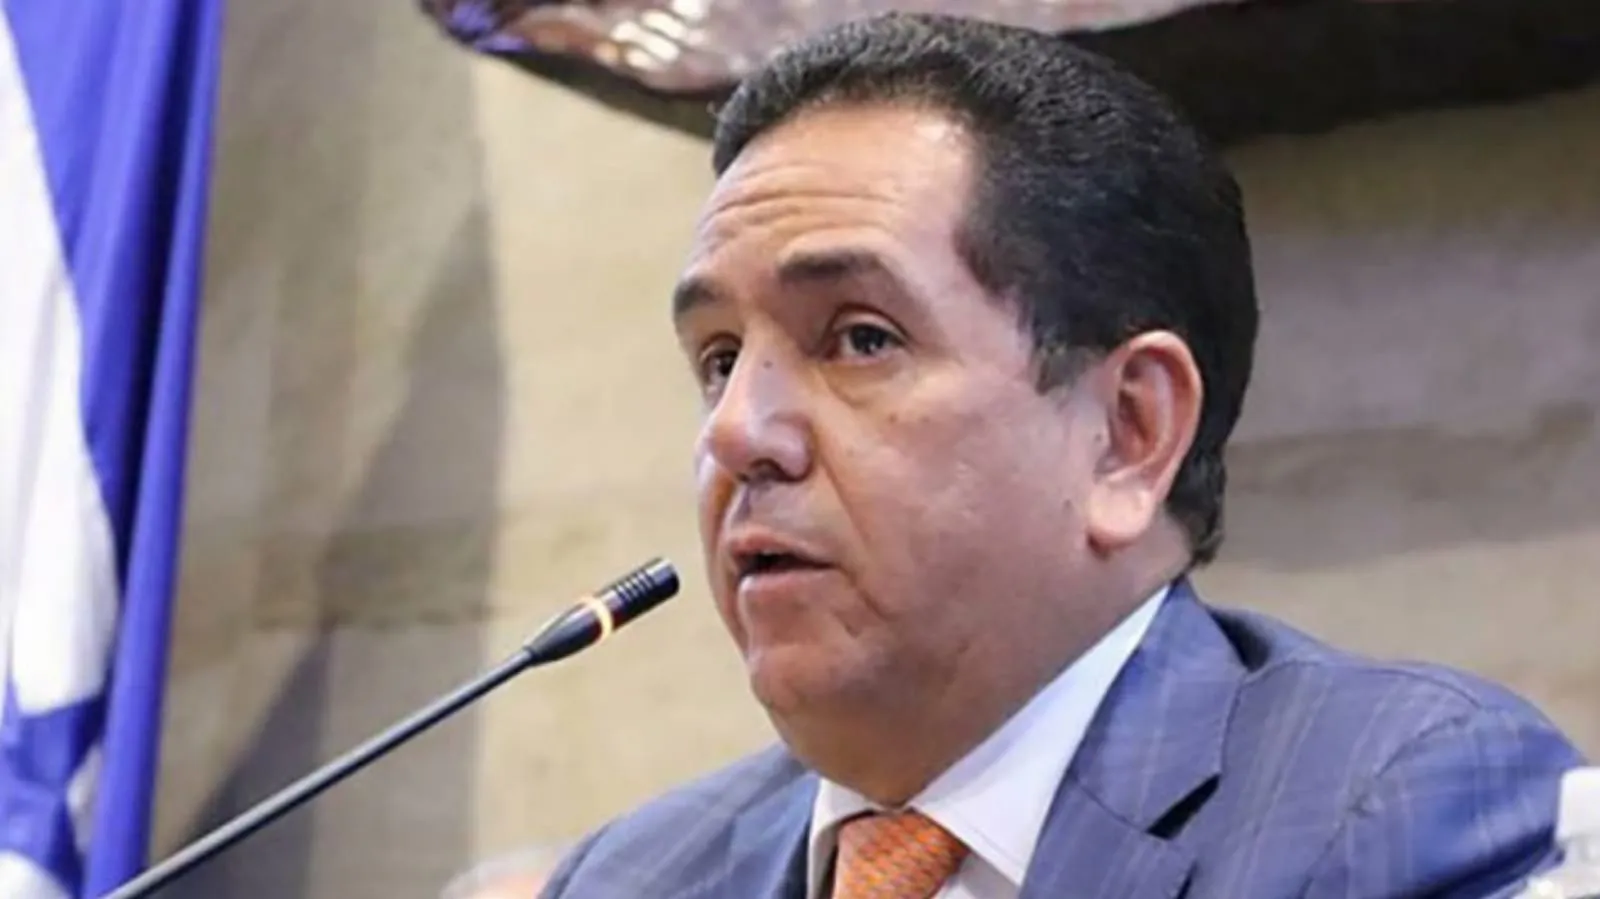 Libre debe tener vergüenza de haber elegido a la directiva del Congreso con solo 44 diputados, señala “Toño" Rivera